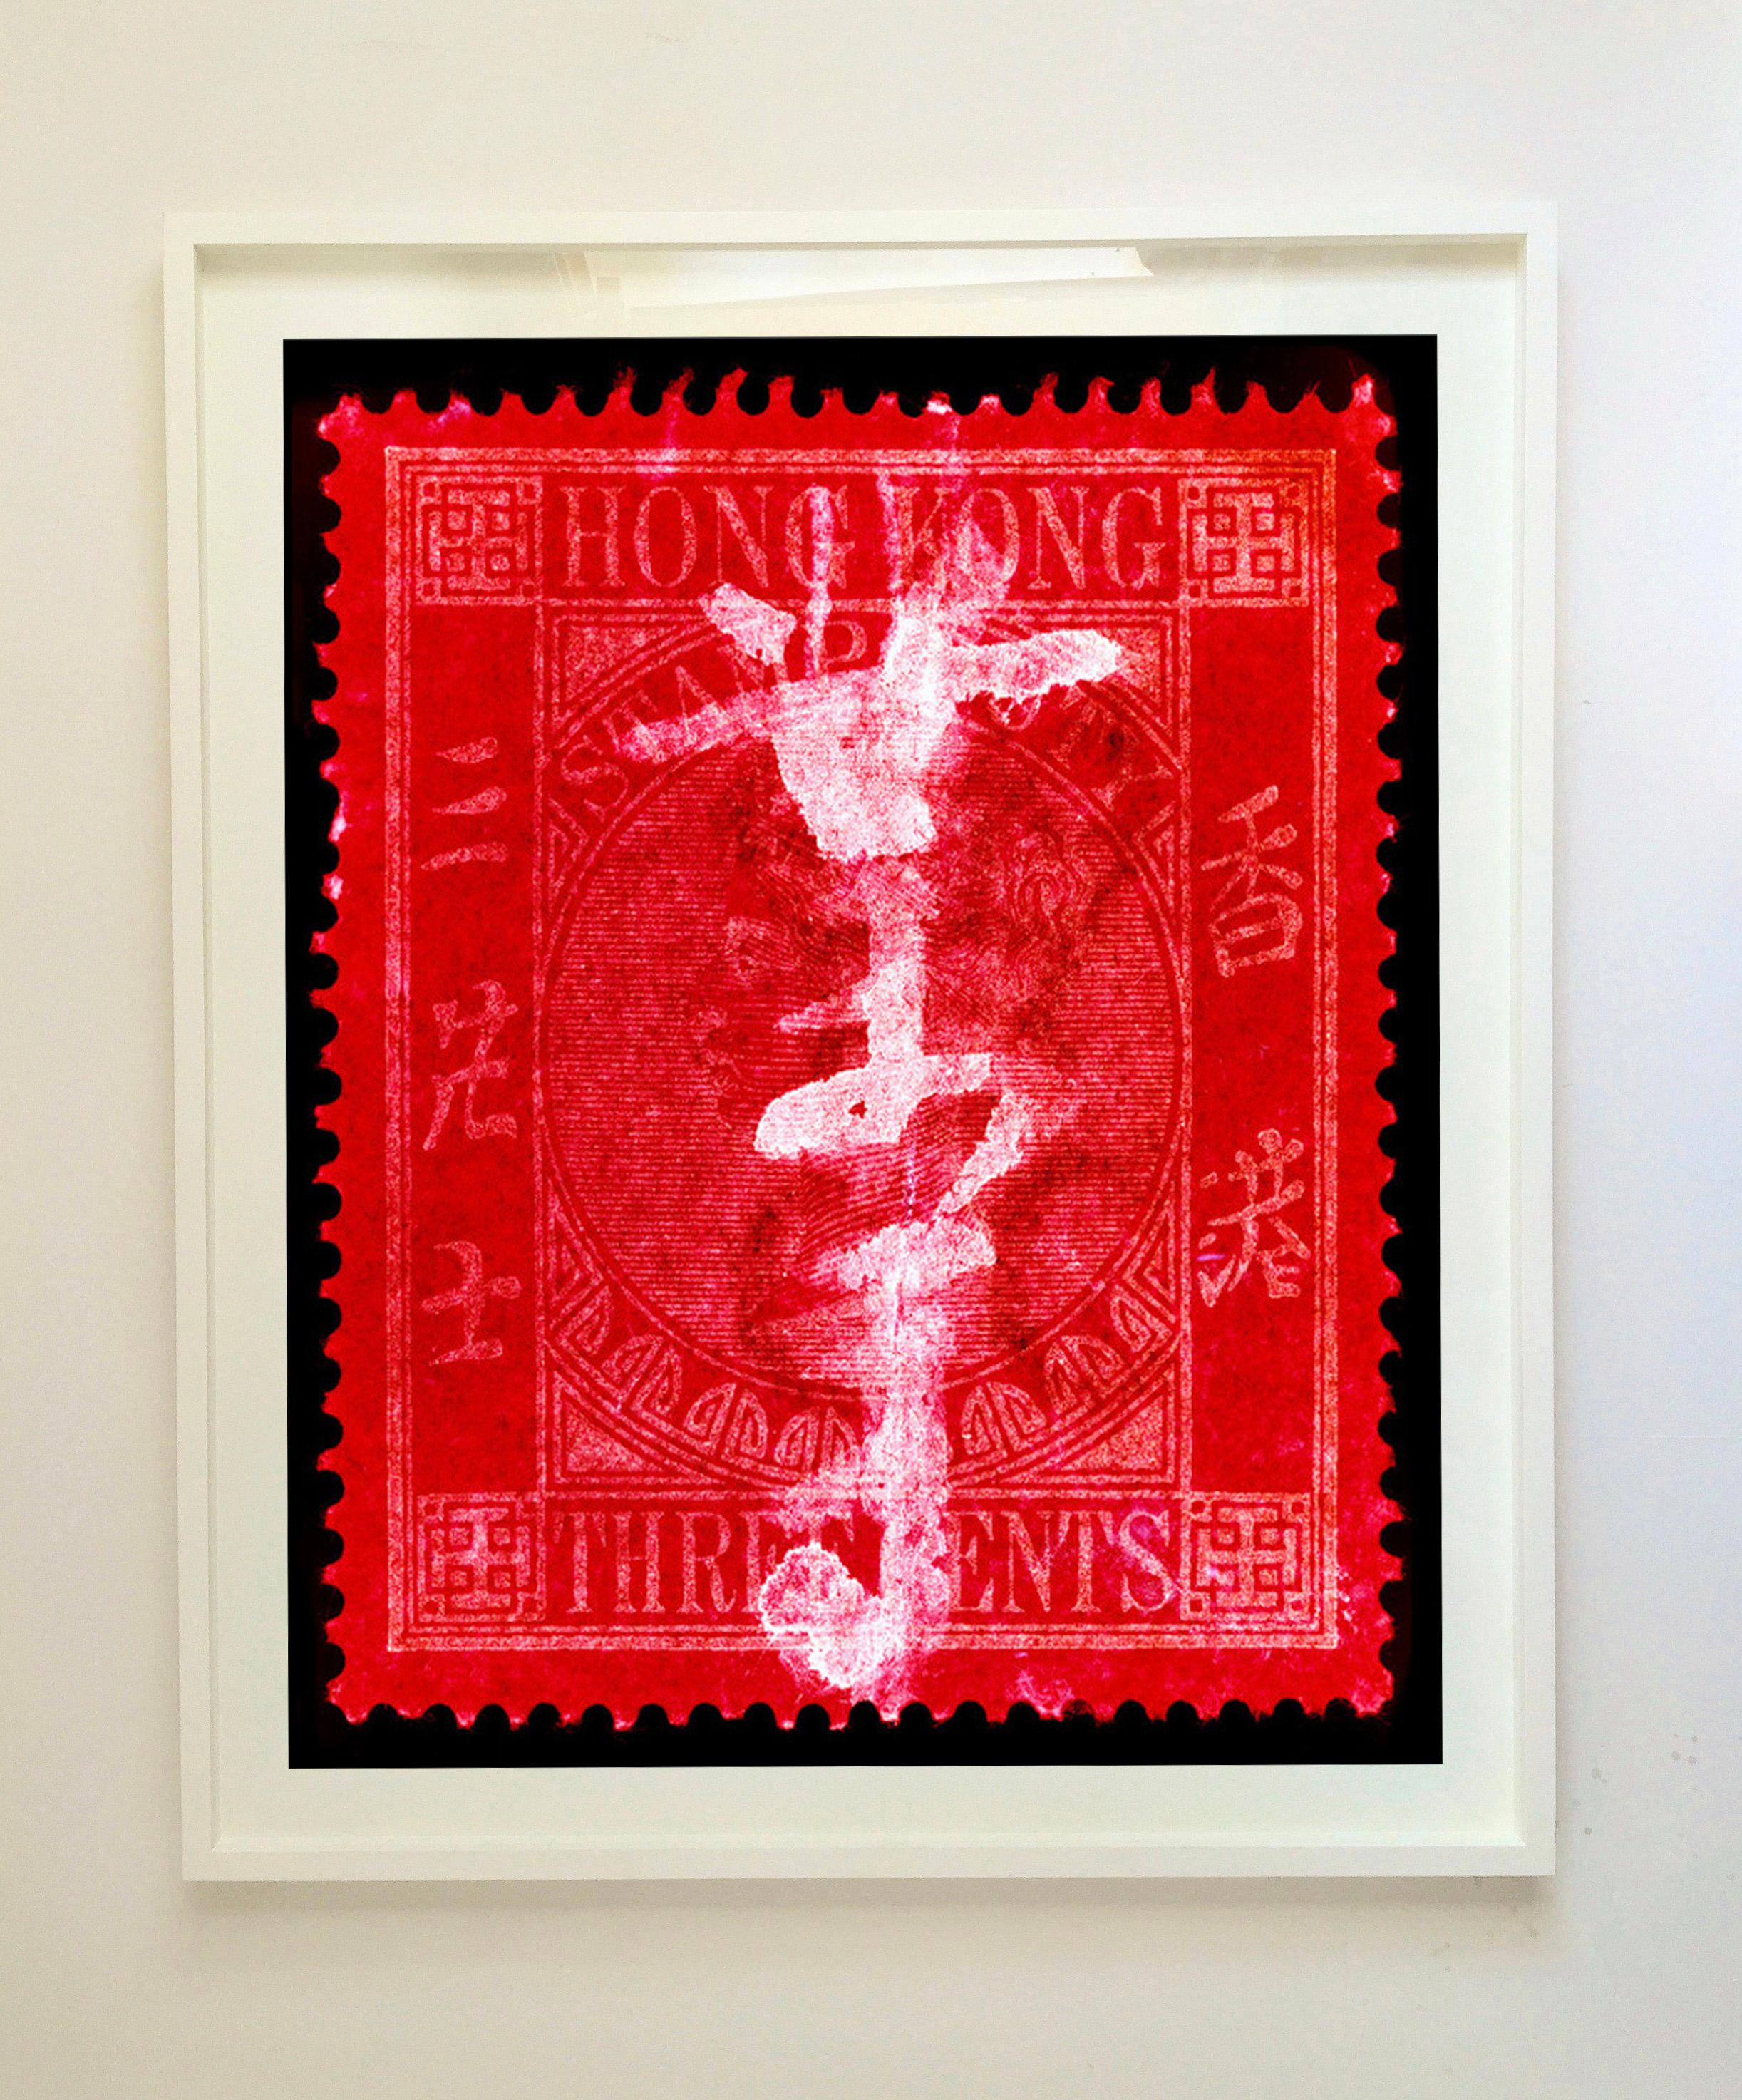 Collection de timbres de Hong Kong, QV 3 cents - Photographie couleur Pop Art - Rouge Color Photograph par Heidler & Heeps